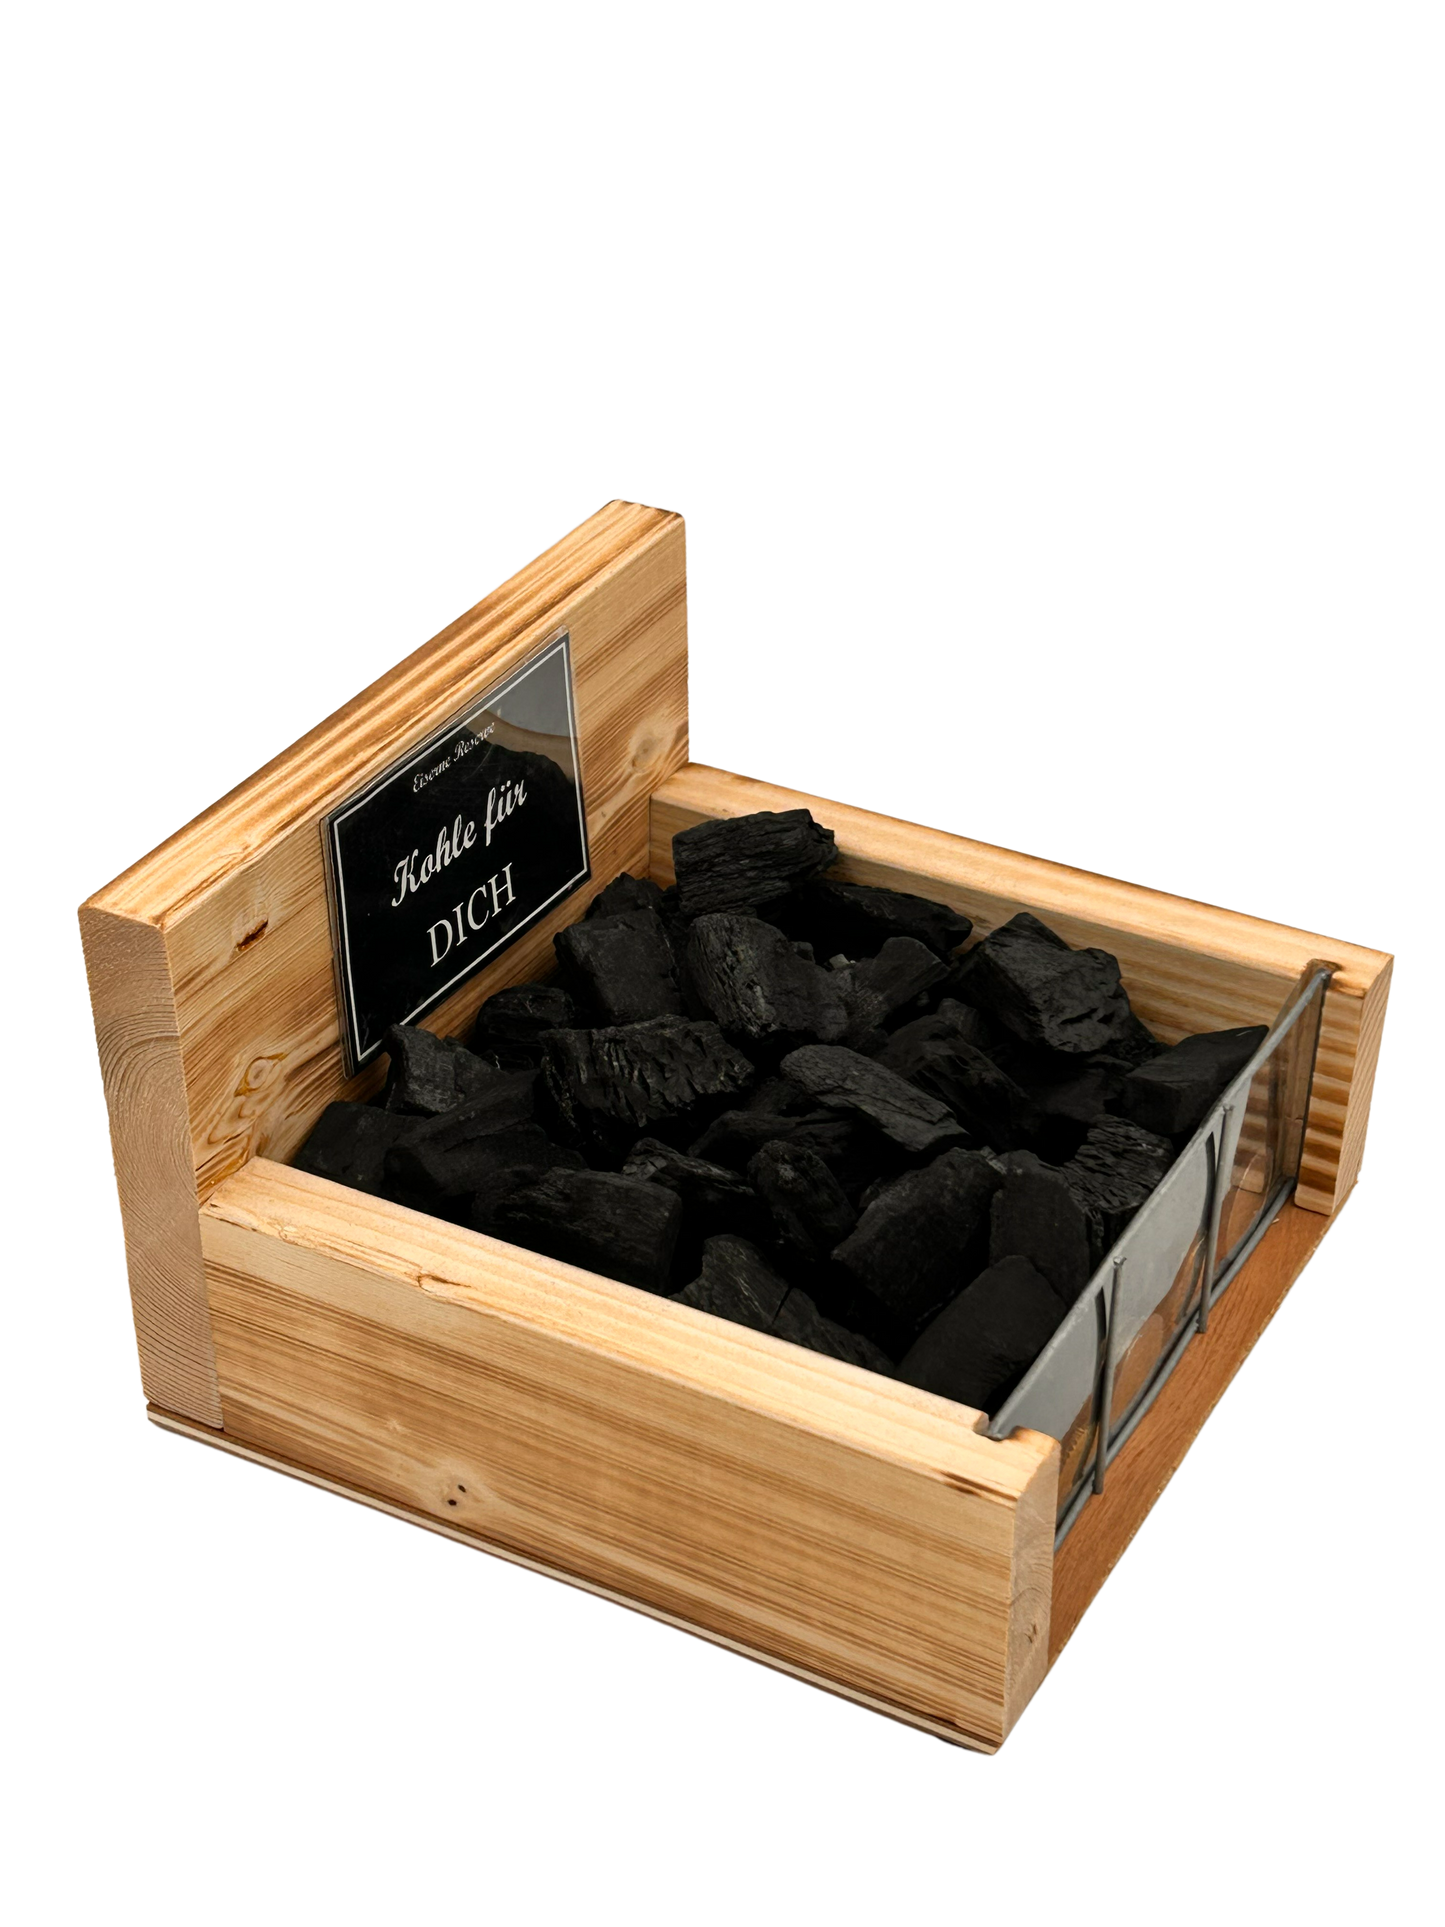 Kohle für DICH - Kohle Geschenk - Geldgeschenke Verpackung